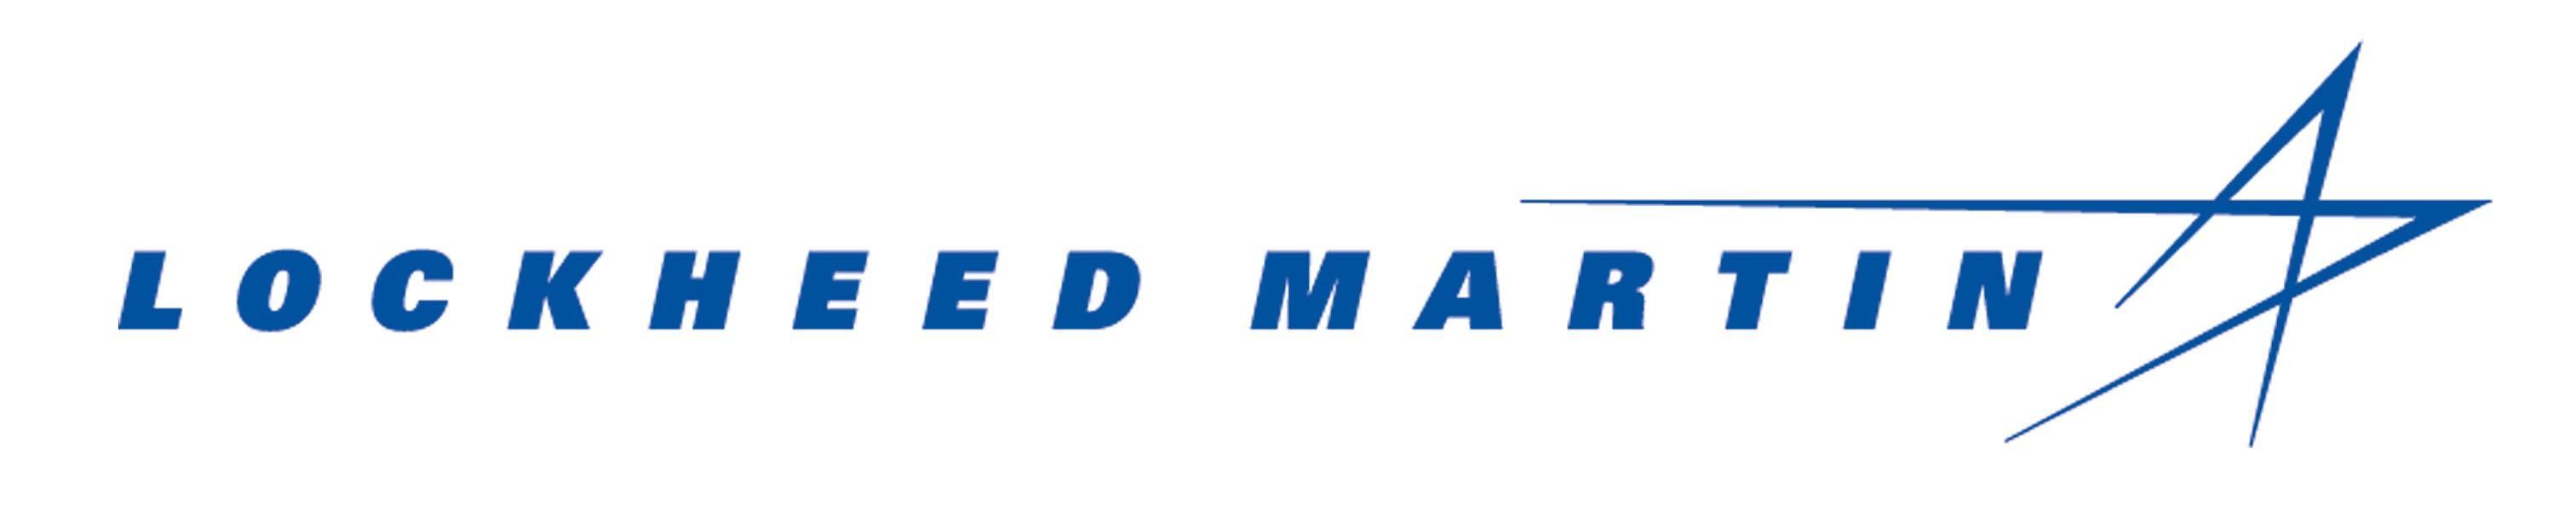 Locheed Martin Logo - Lockheed Martin Logo | Clipart Panda - Free Clipart Images